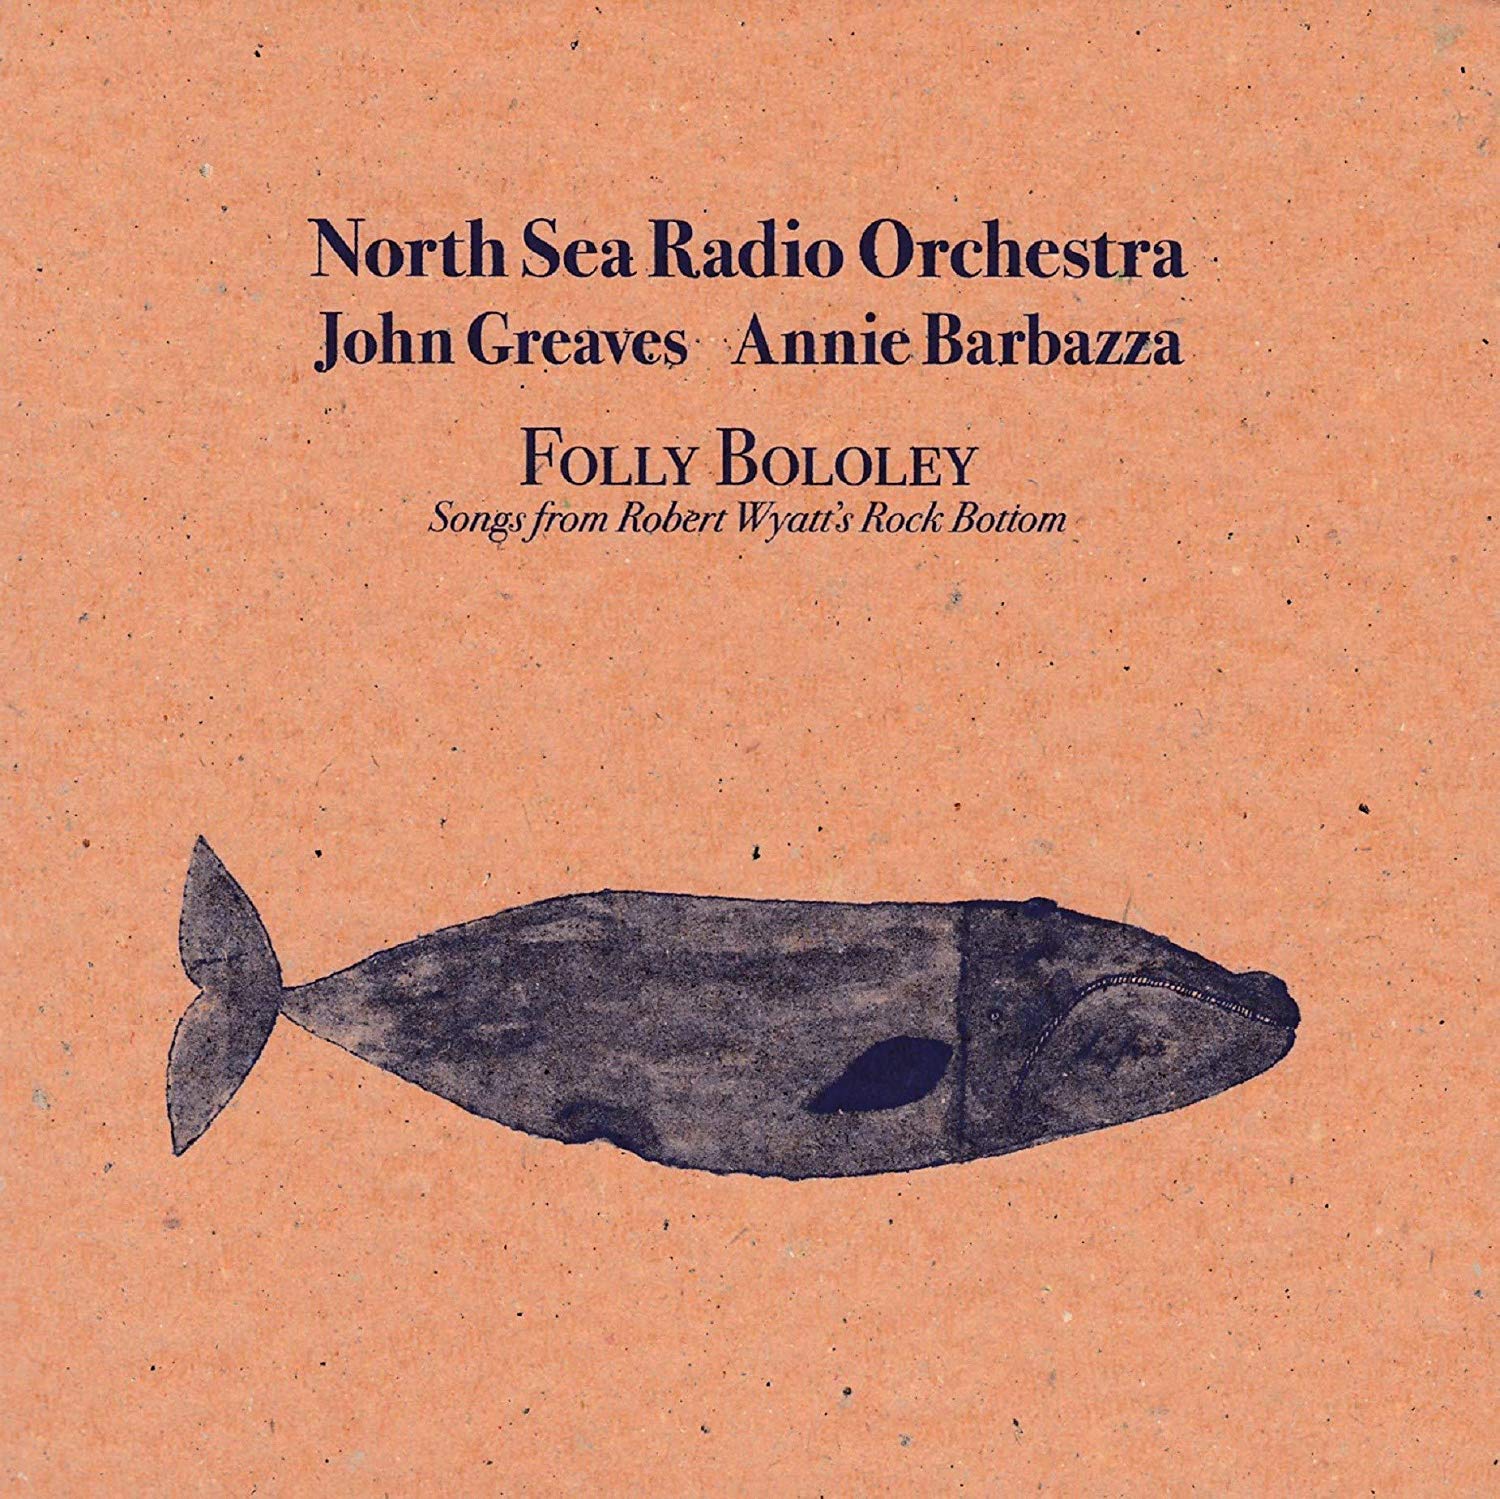 Vinile North Sea Radio Orchestra - Folly Bololey NUOVO SIGILLATO, EDIZIONE DEL 24/05/2019 SUBITO DISPONIBILE